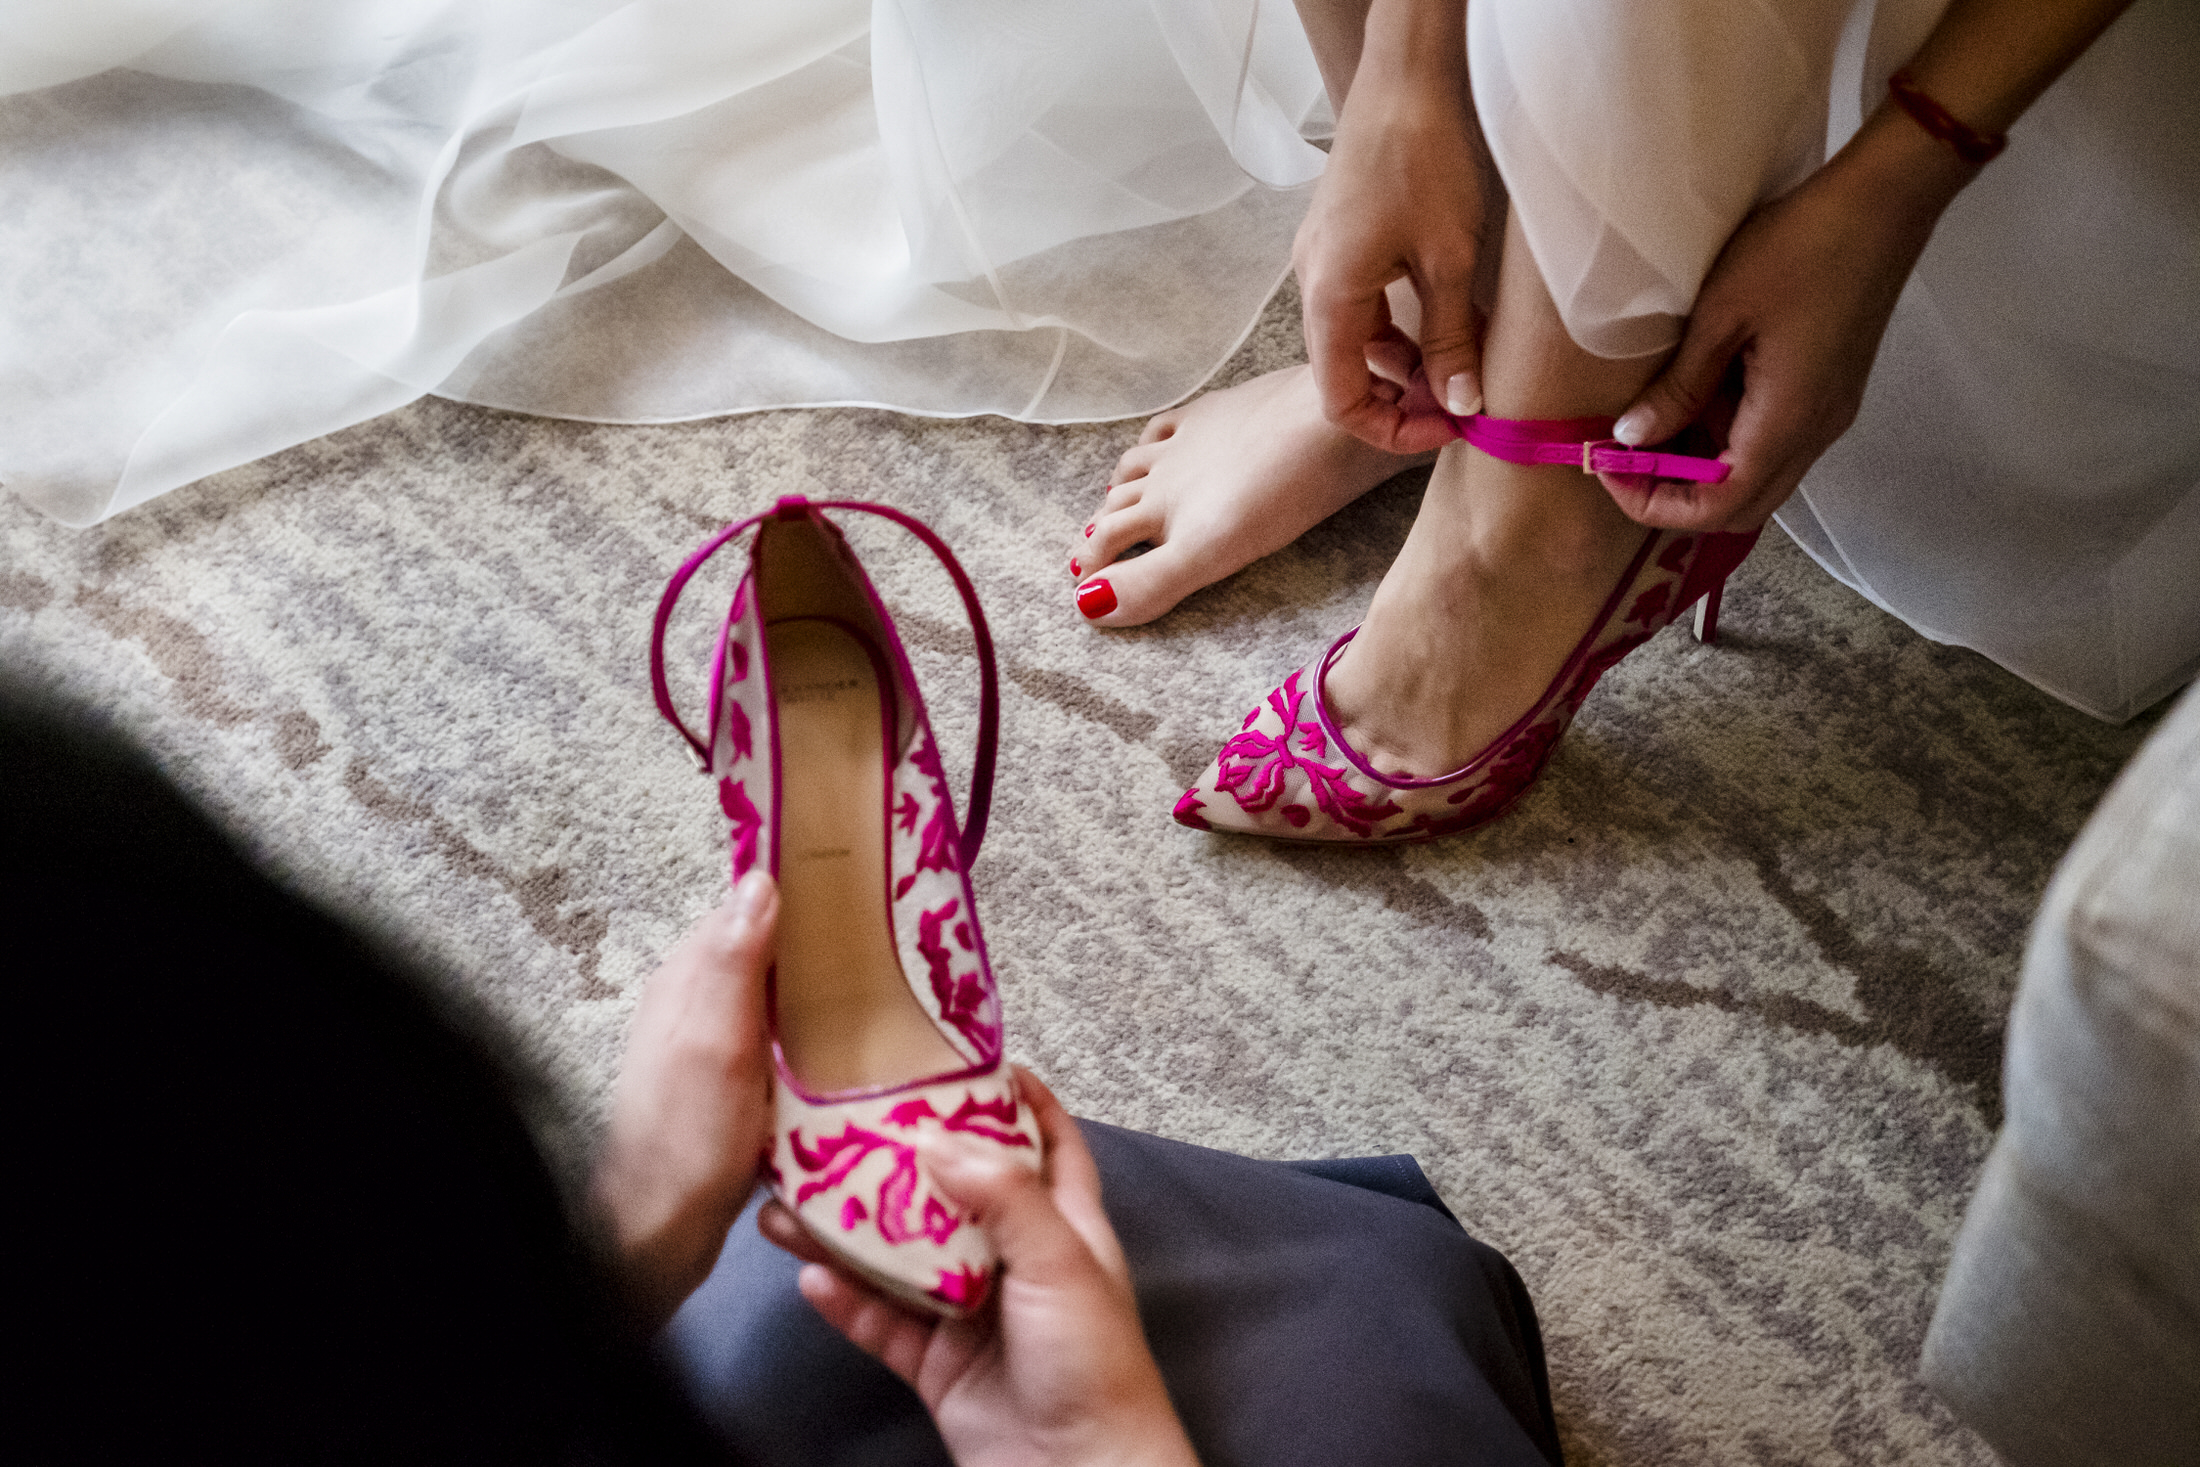 bride wedding shoes